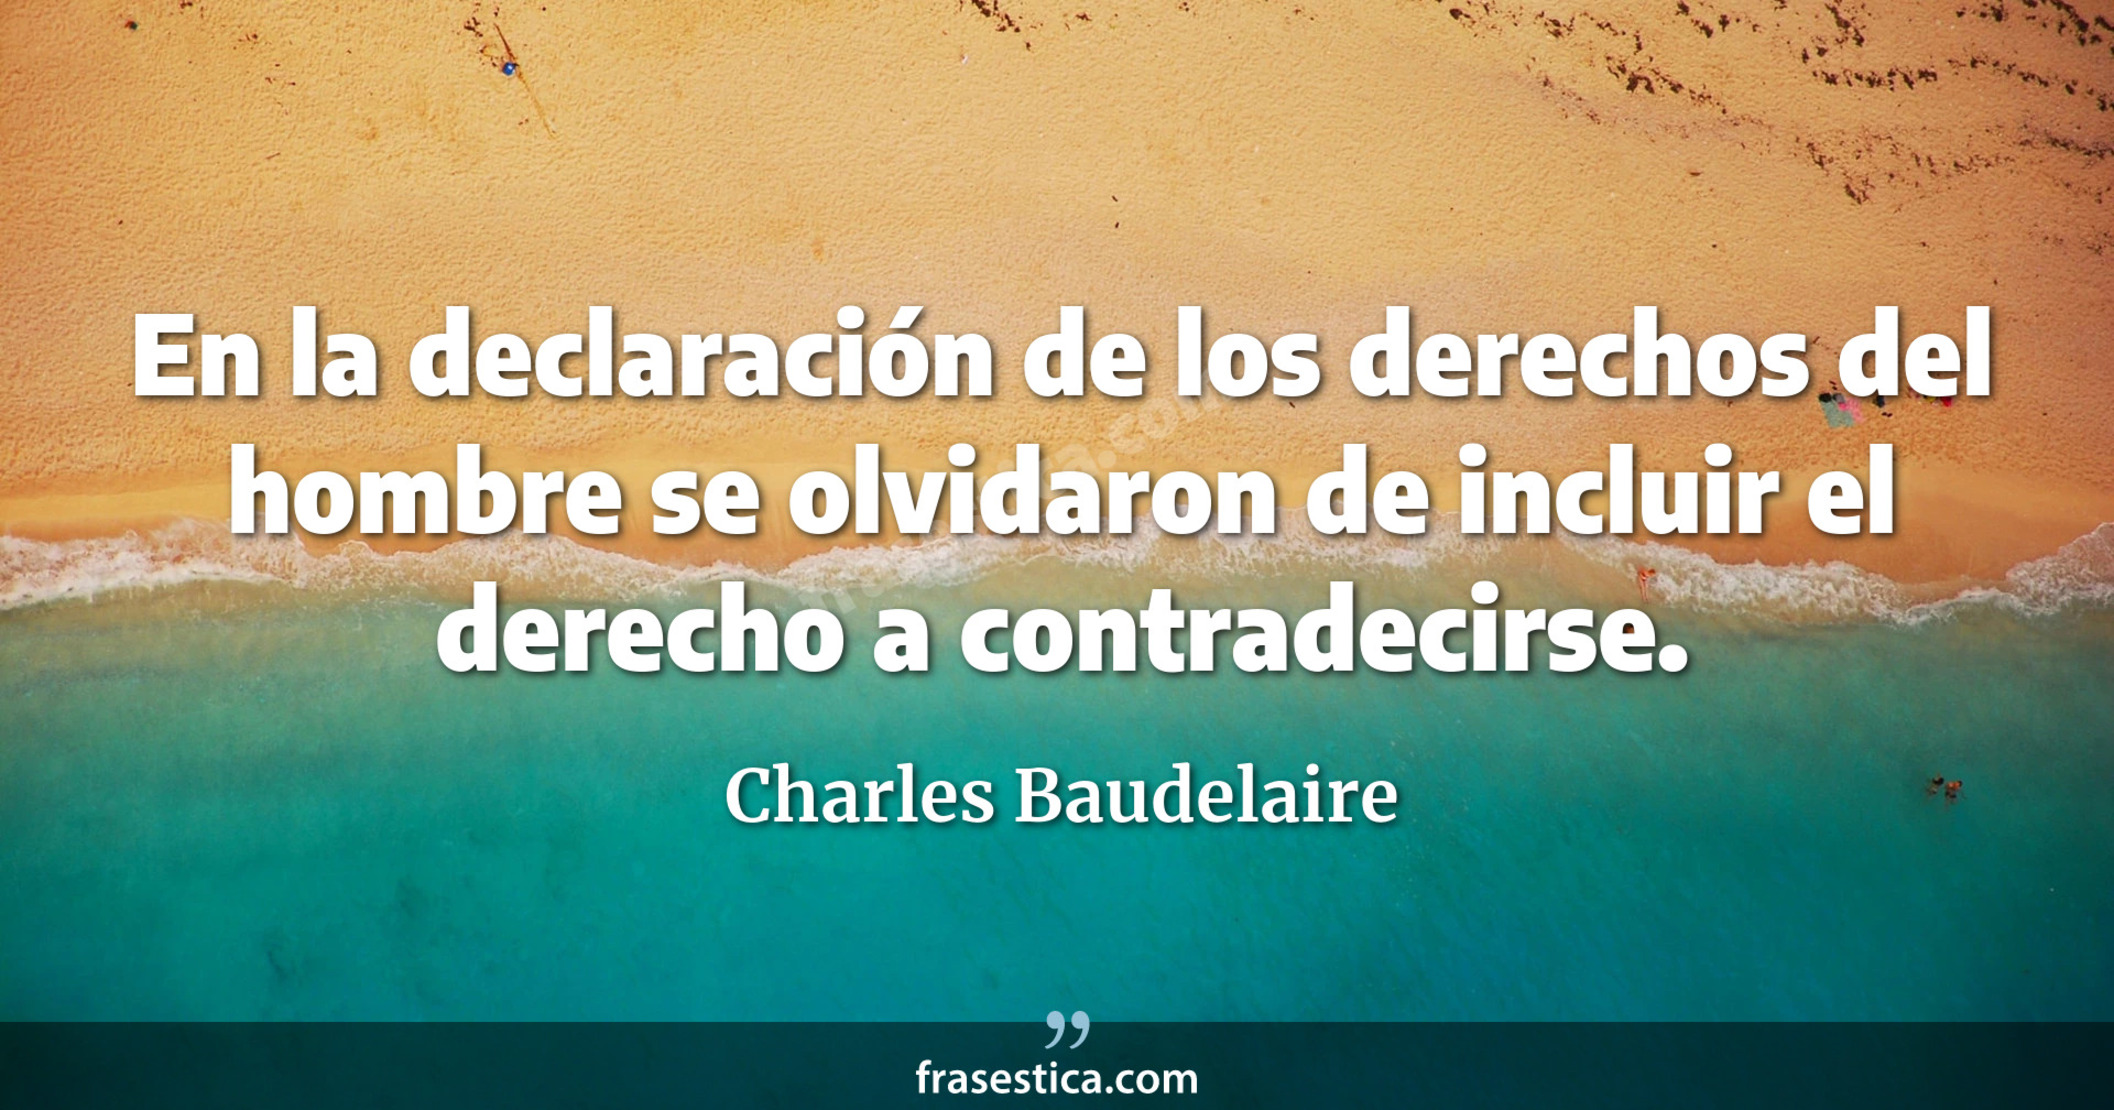 En la declaración de los derechos del hombre se olvidaron de incluir el derecho a contradecirse. - Charles Baudelaire